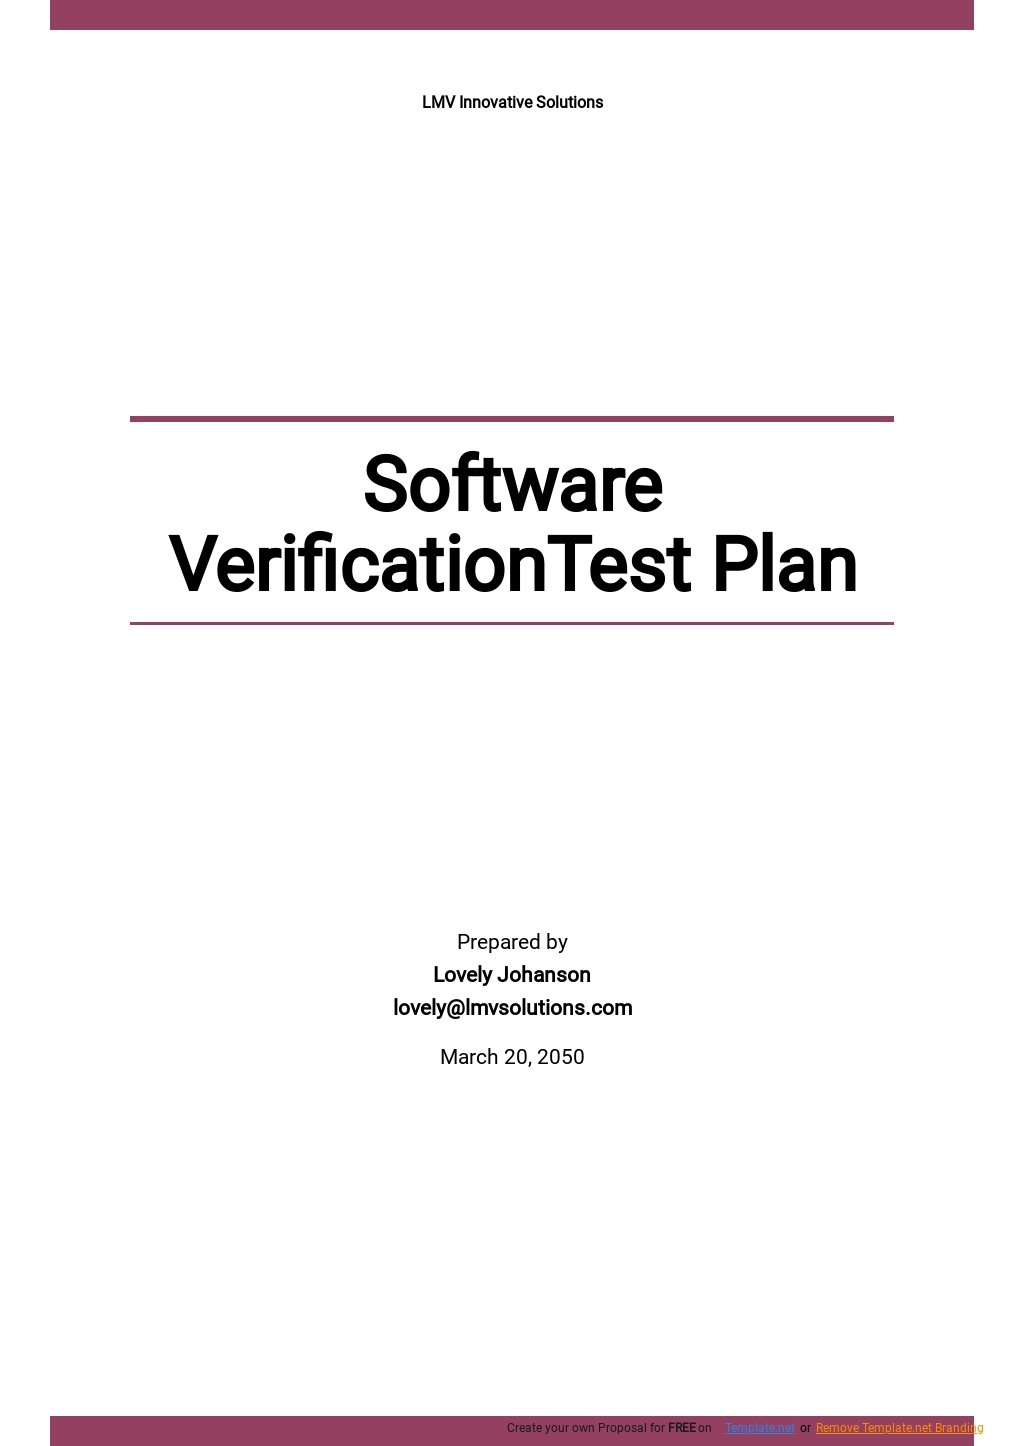 Software Verification Test Plan Template.jpe